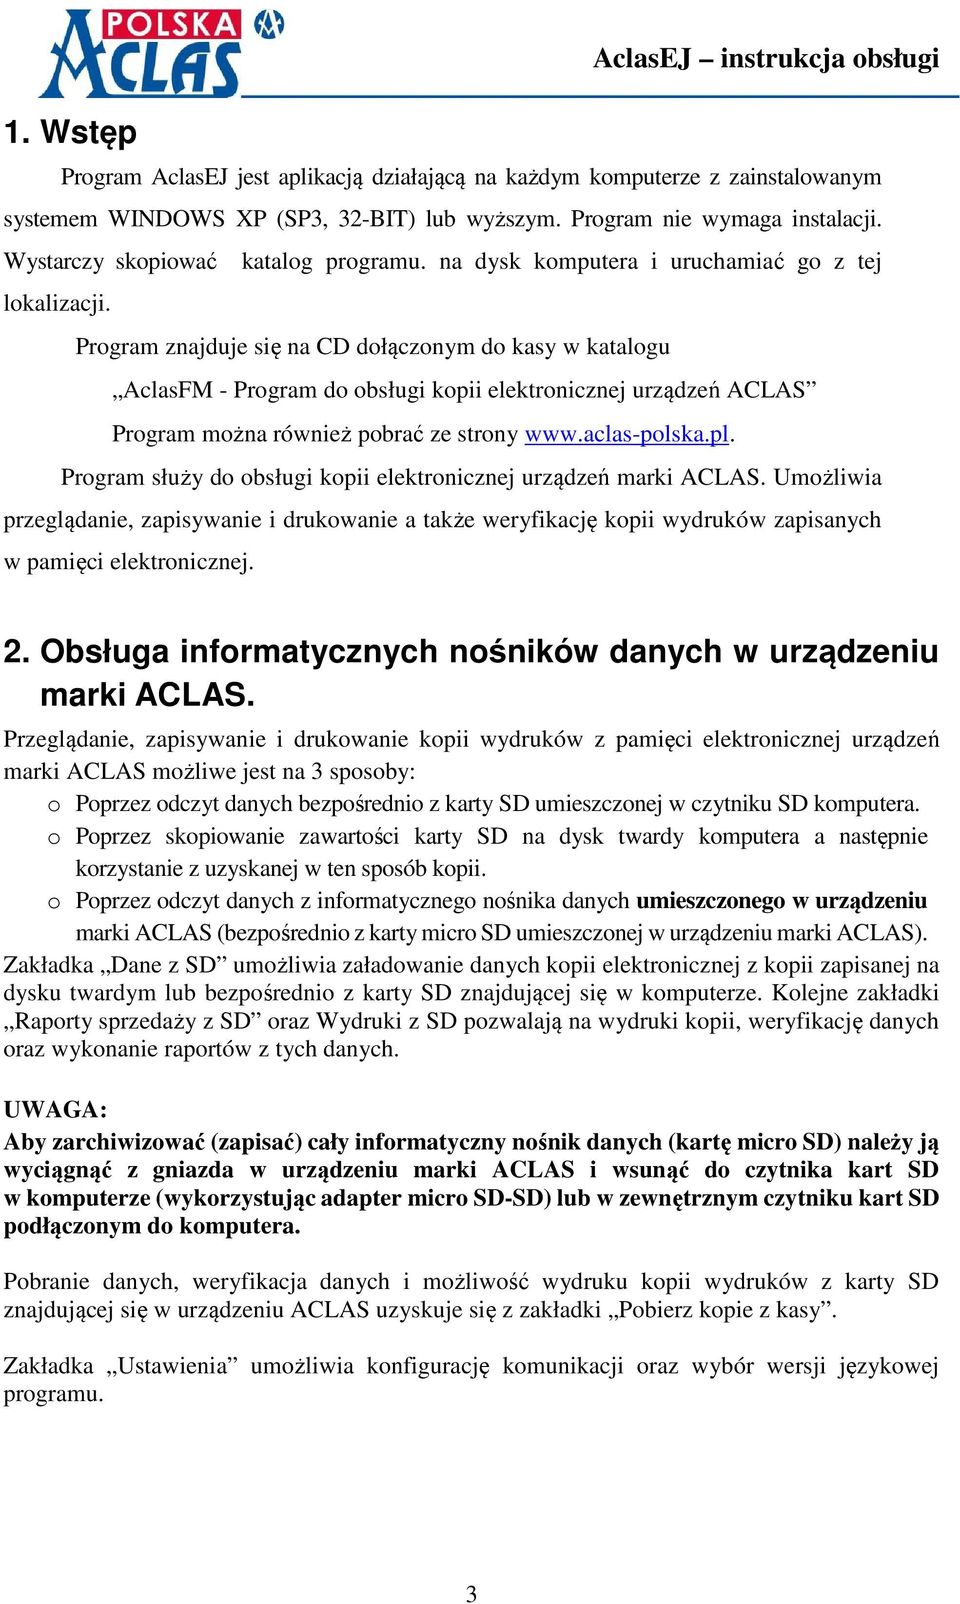 Program znajduje się na CD dołączonym do kasy w katalogu AclasFM - Program do obsługi kopii elektronicznej urządzeń ACLAS Program można również pobrać ze strony www.aclas-polska.pl.